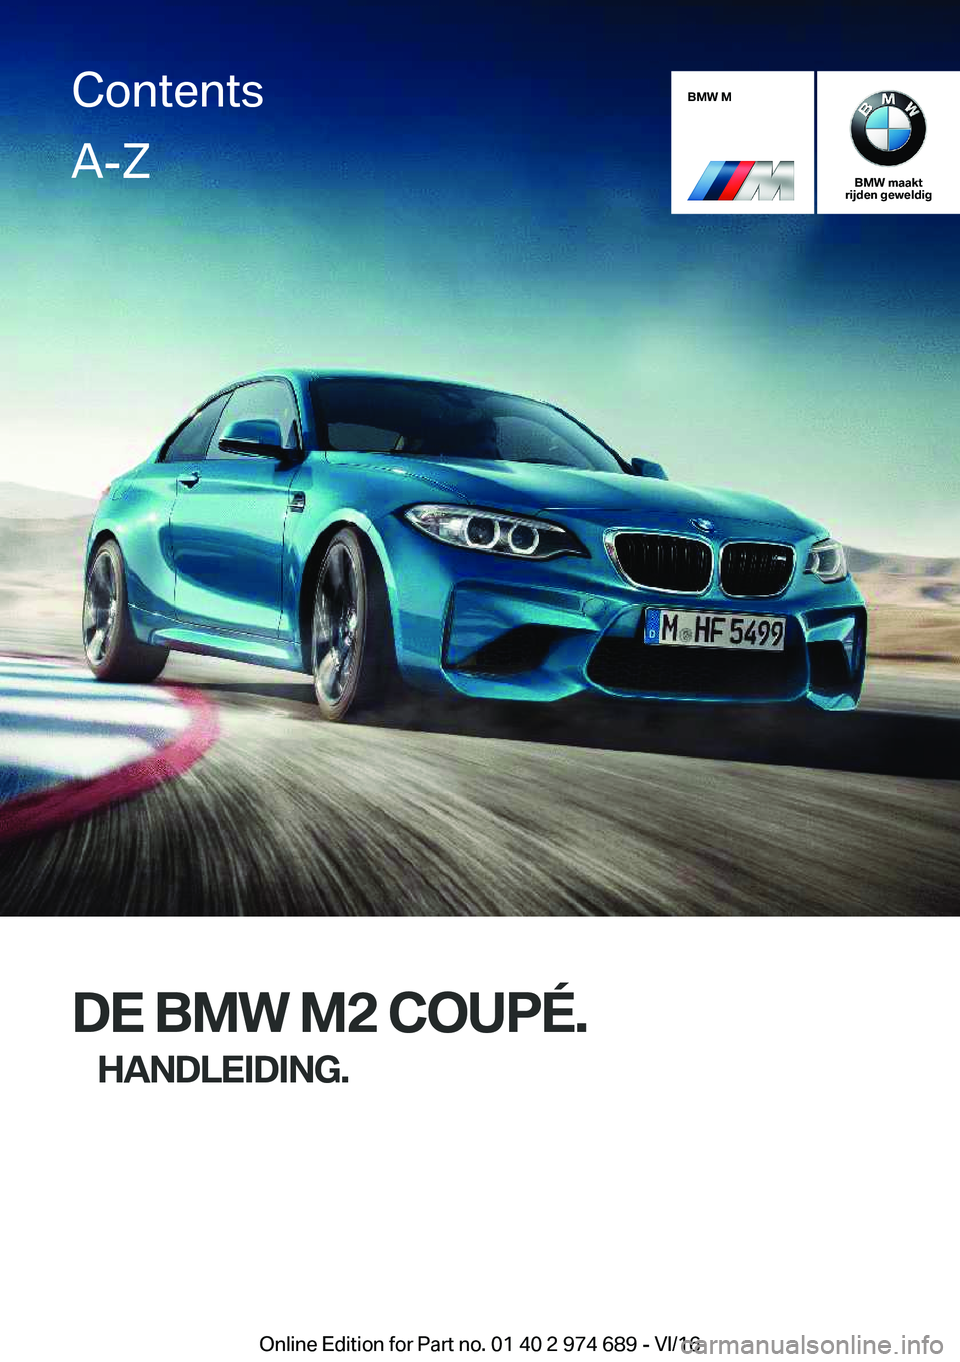 BMW M2 2017  Instructieboekjes (in Dutch) �B�M�W��M
�B�M�W��m�a�a�k�t
�r�i�j�d�e�n��g�e�w�e�l�d�i�g
�D�E��B�M�W��M�2��C�O�U�P�